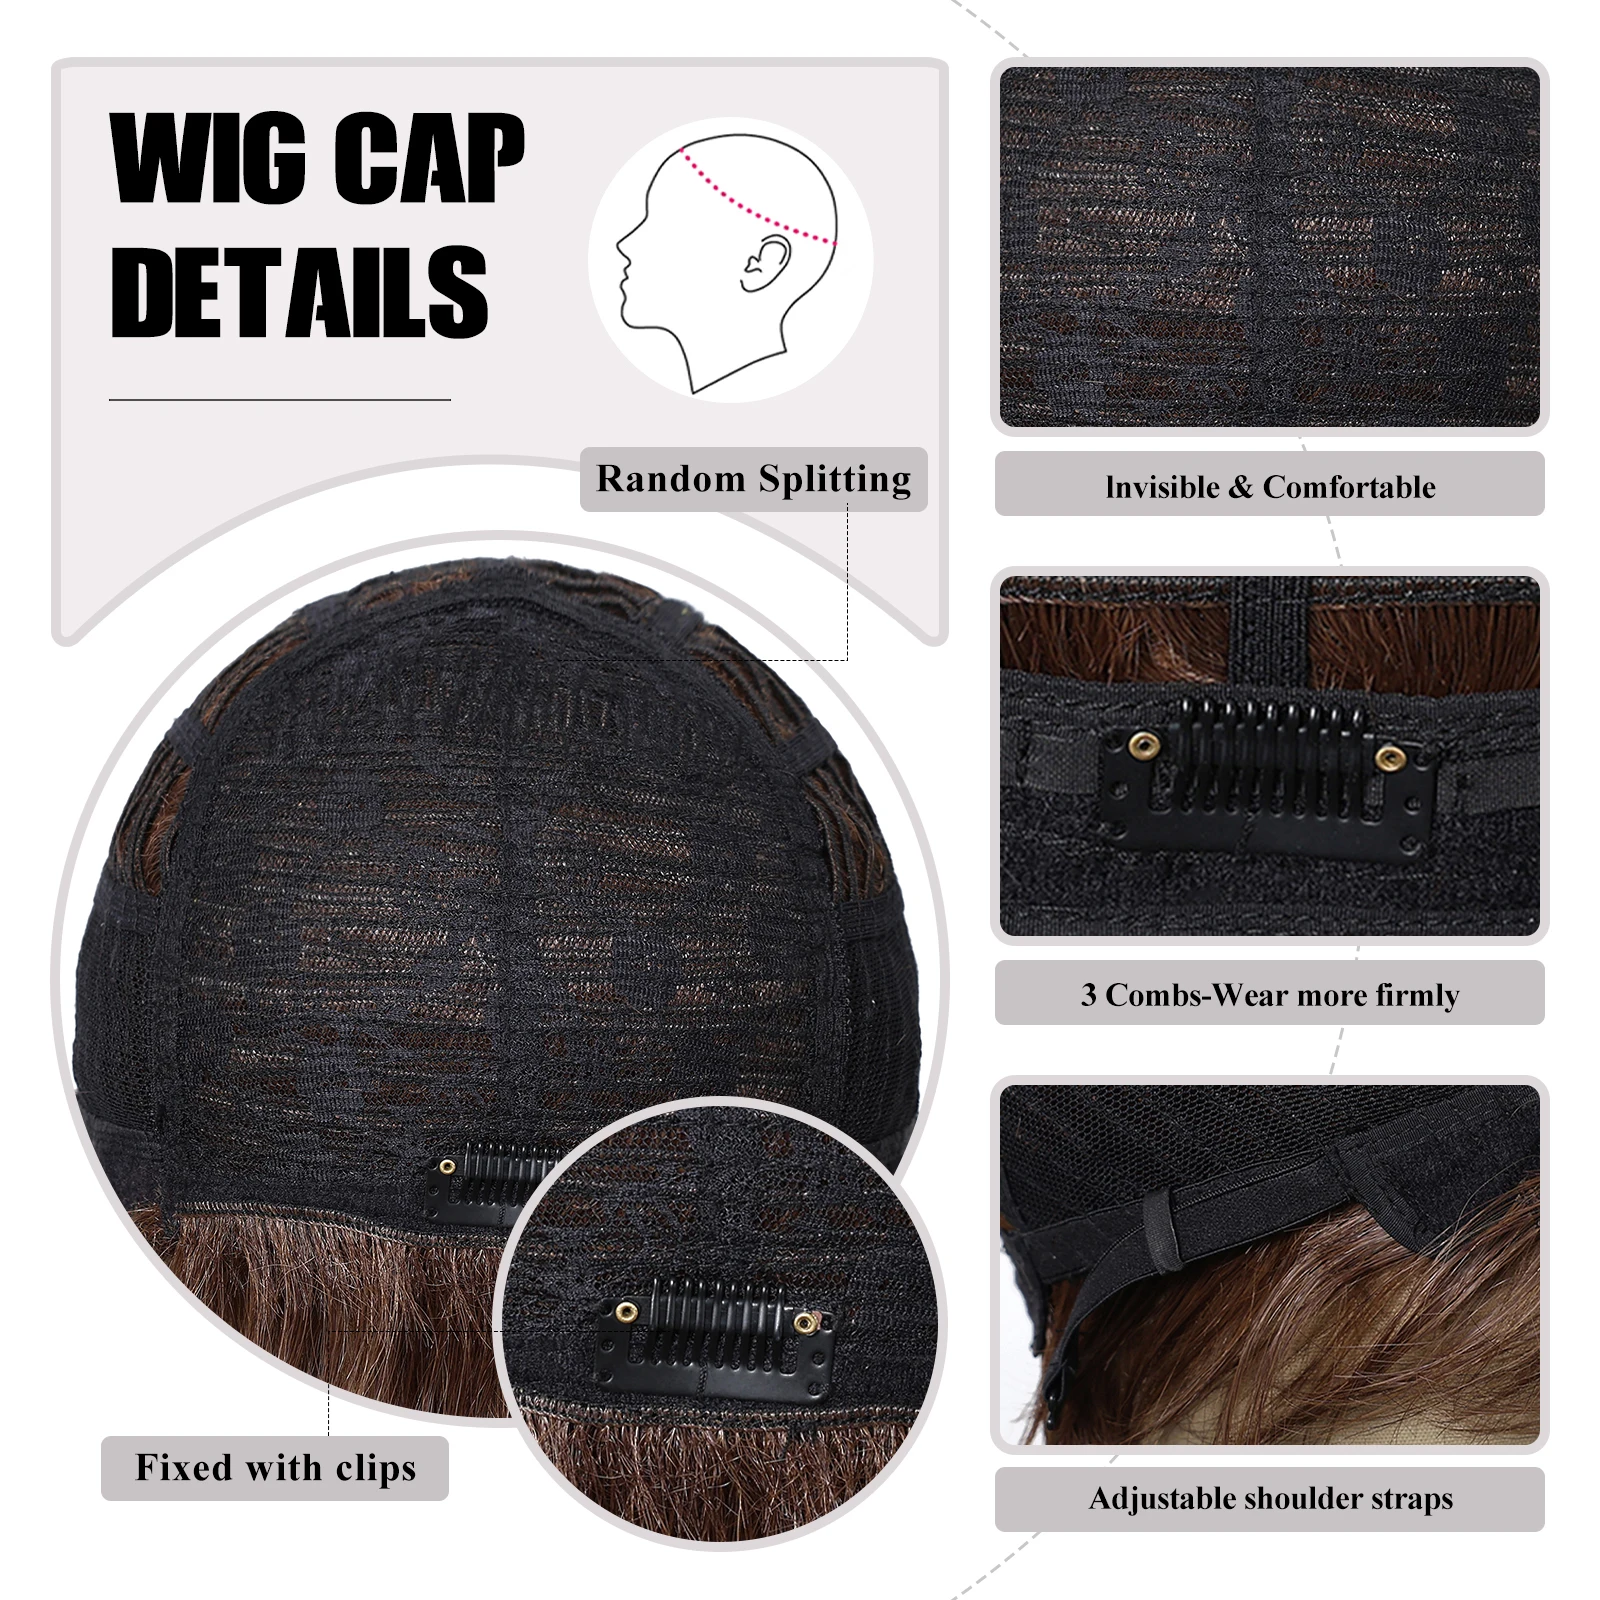 Короткие парики Фея для женщин каштановые коричневые прямые Многослойные синтетические парики с 30% натуральными волосами пушистые натуральные Смешанные парики